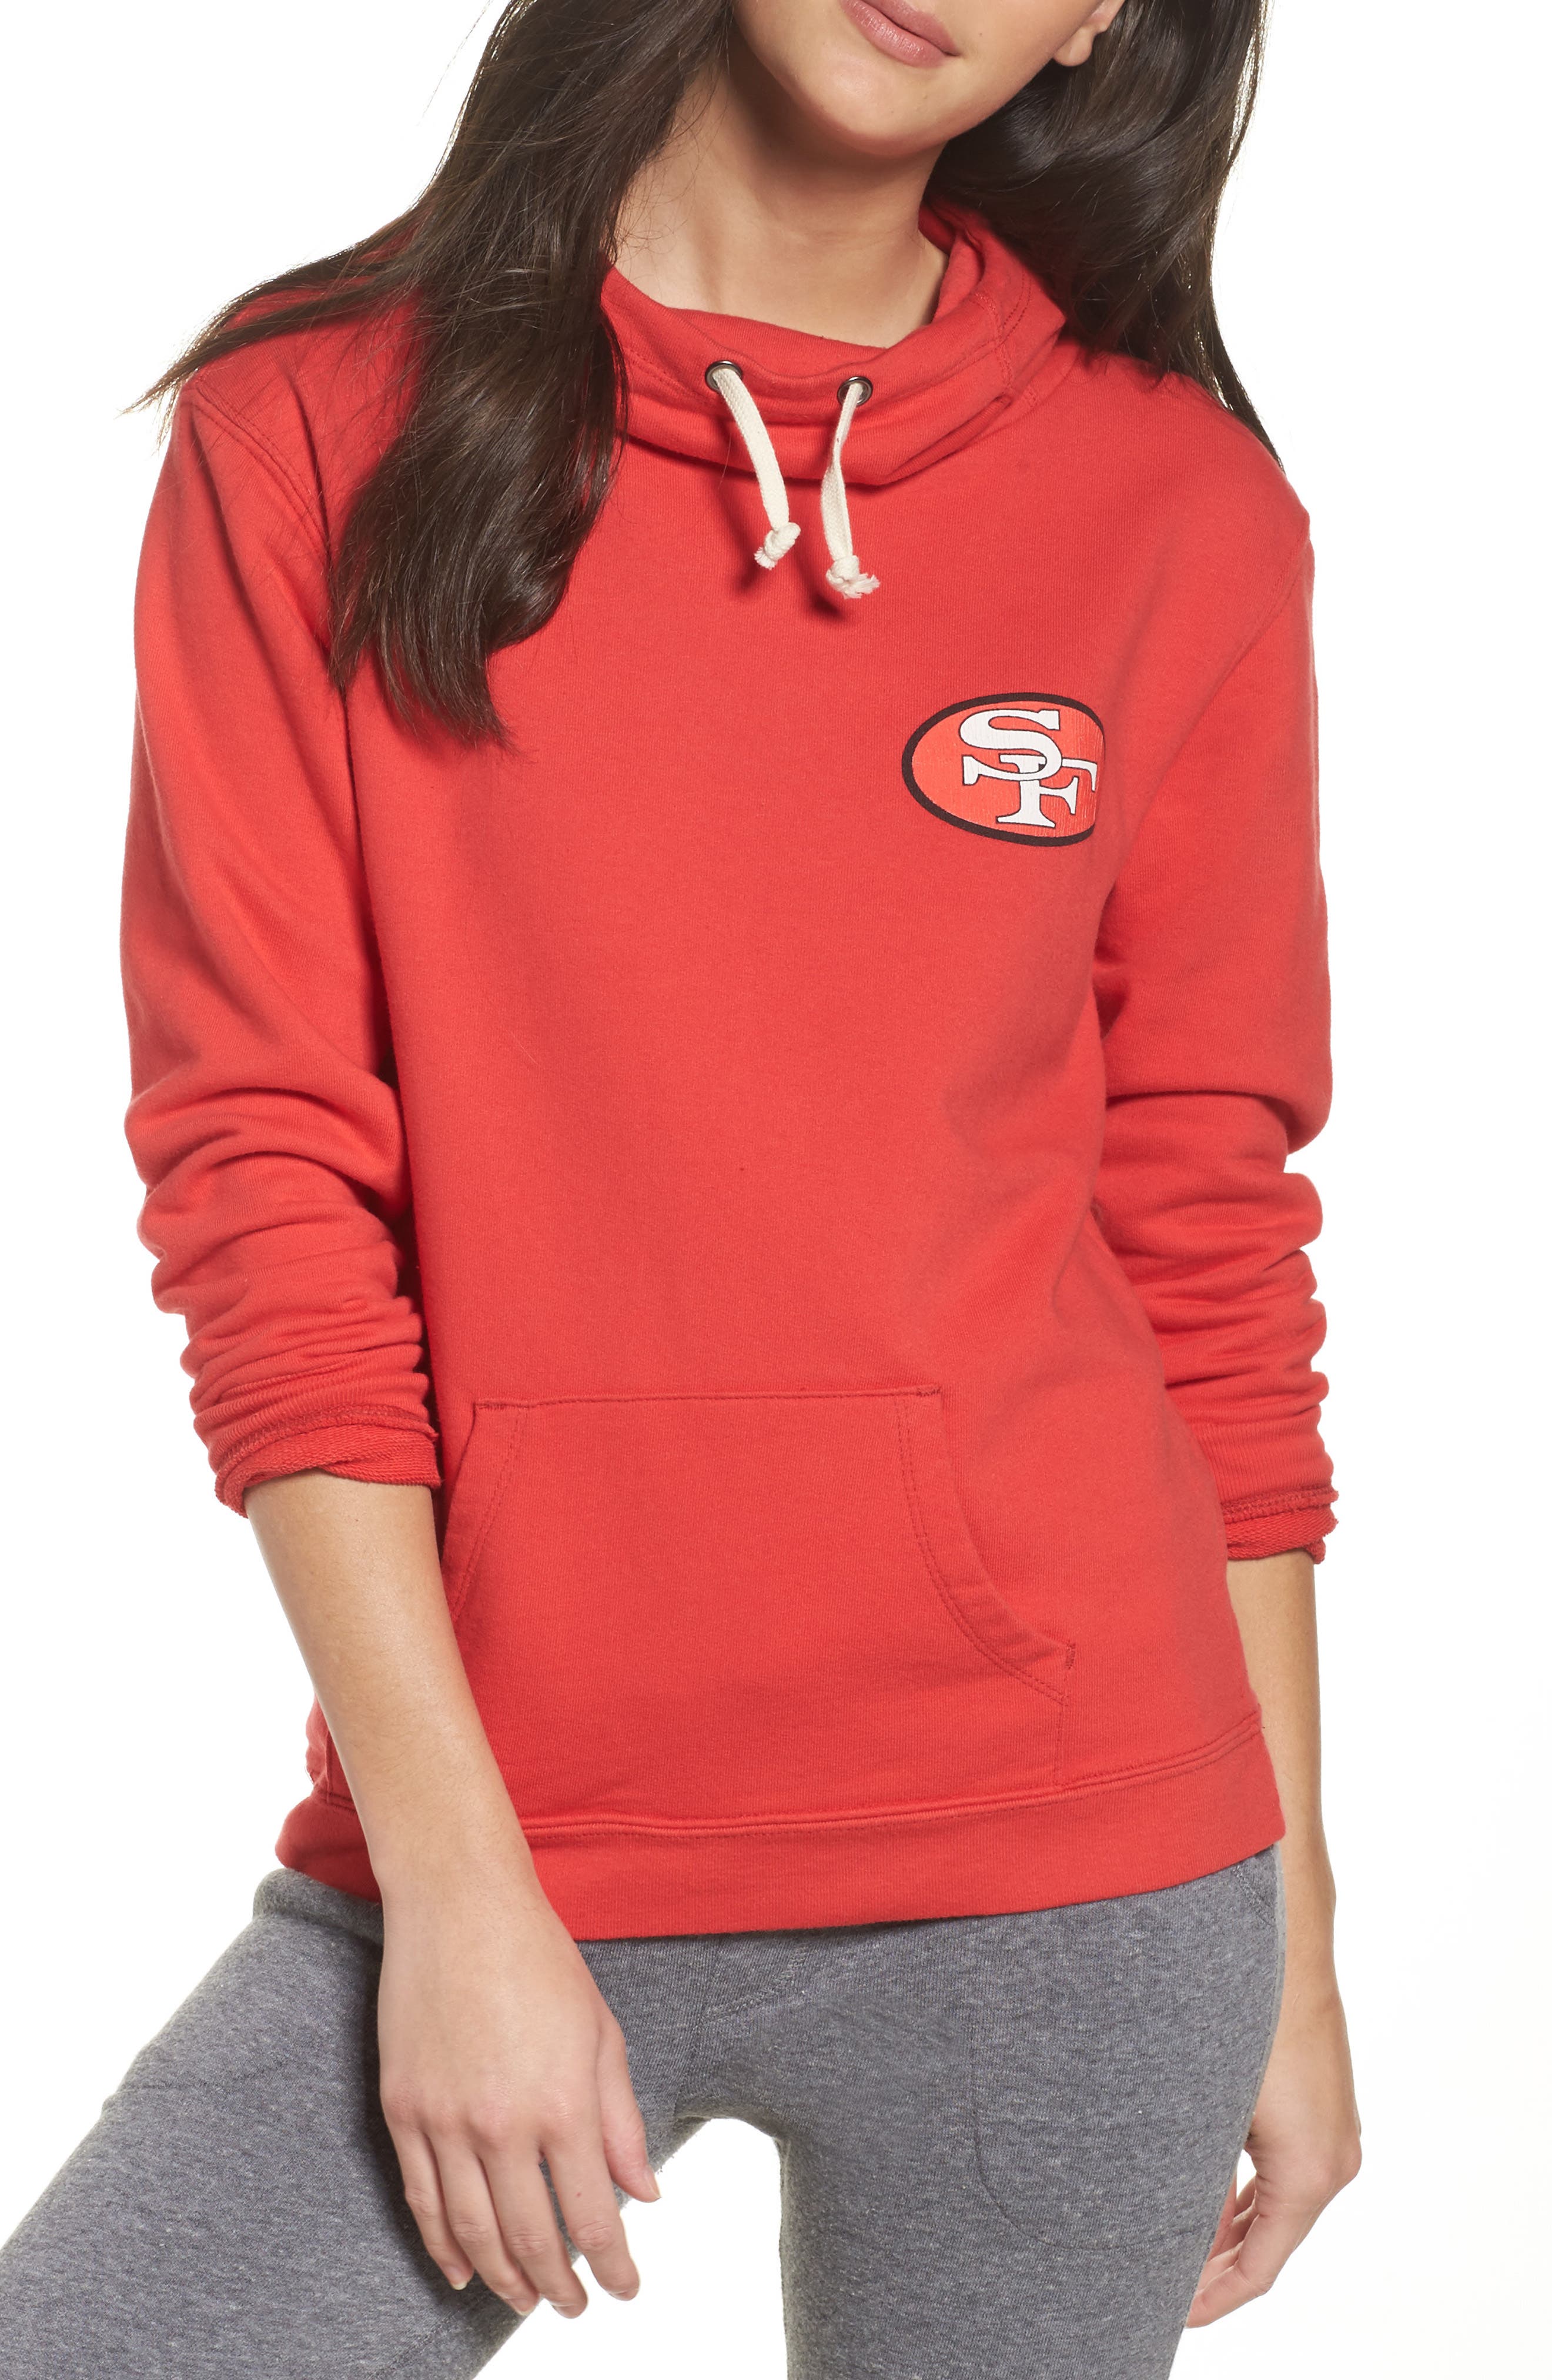 junk food 49ers hoodie